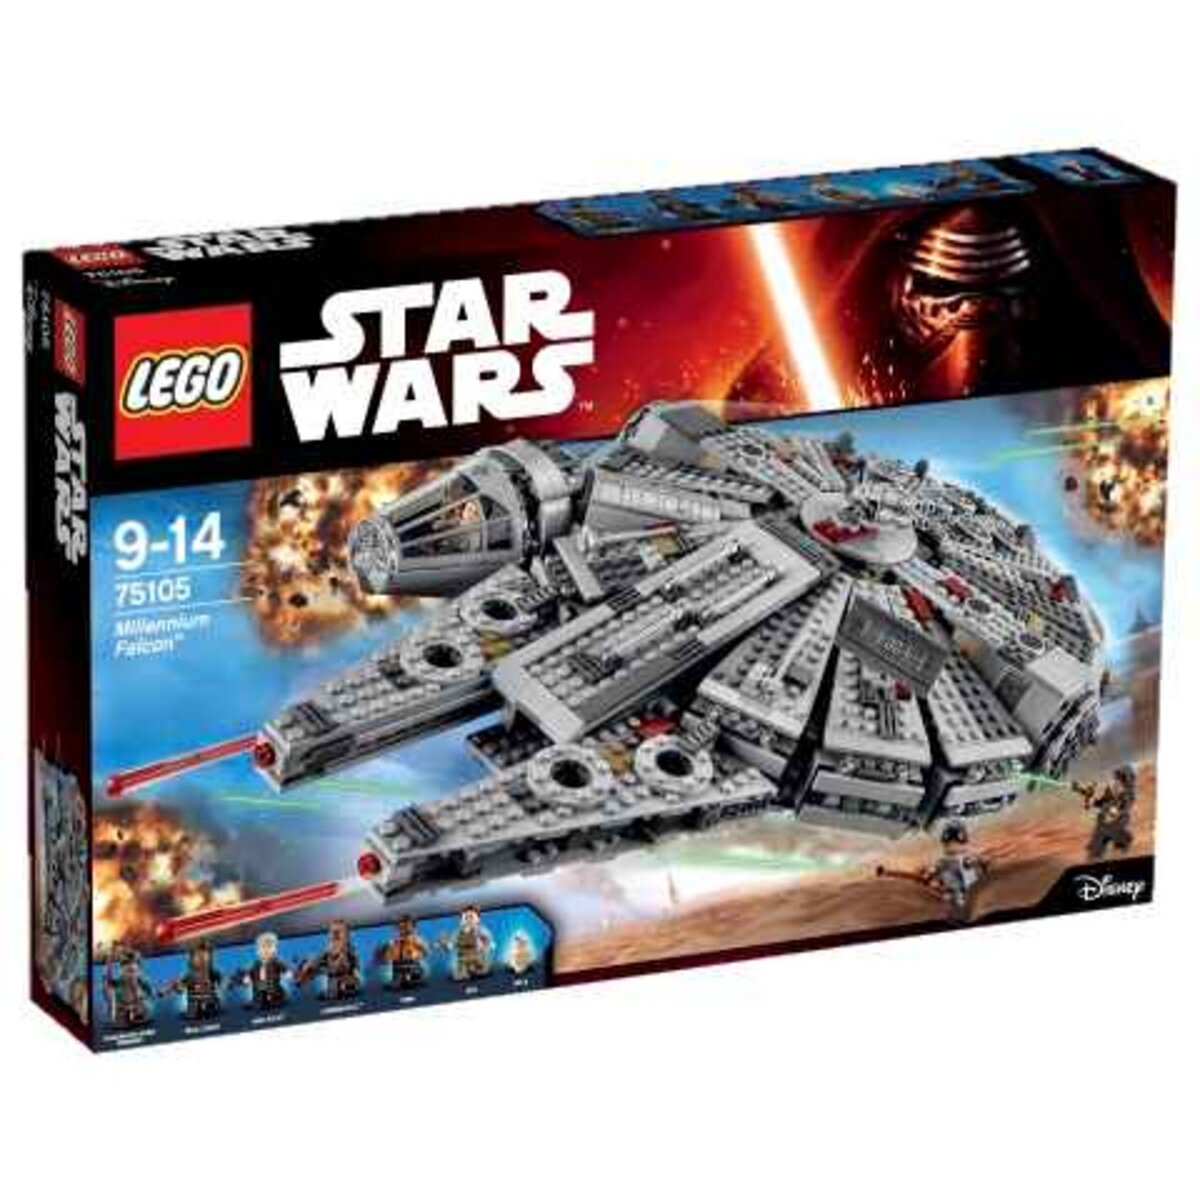 LEGO Star Wars 75105 - Millennium Falcon